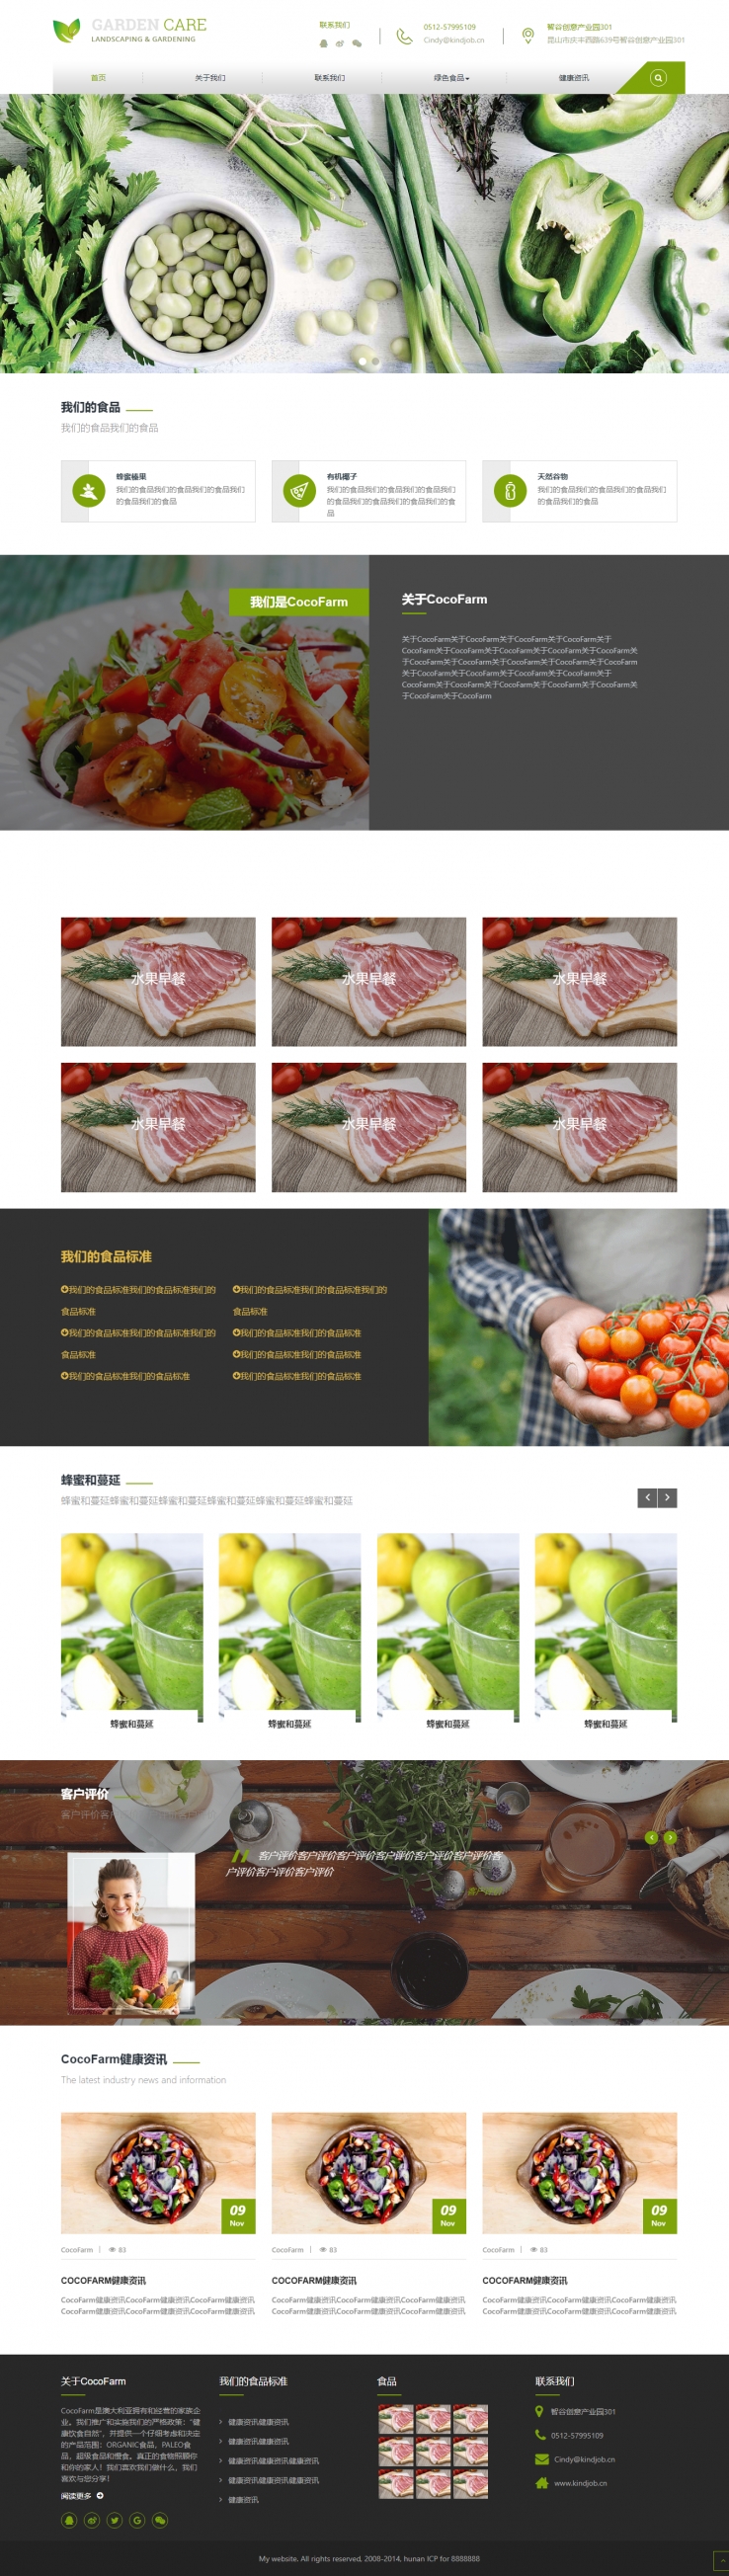 绿色清新风格的有机蔬菜食品企业网站源码下载